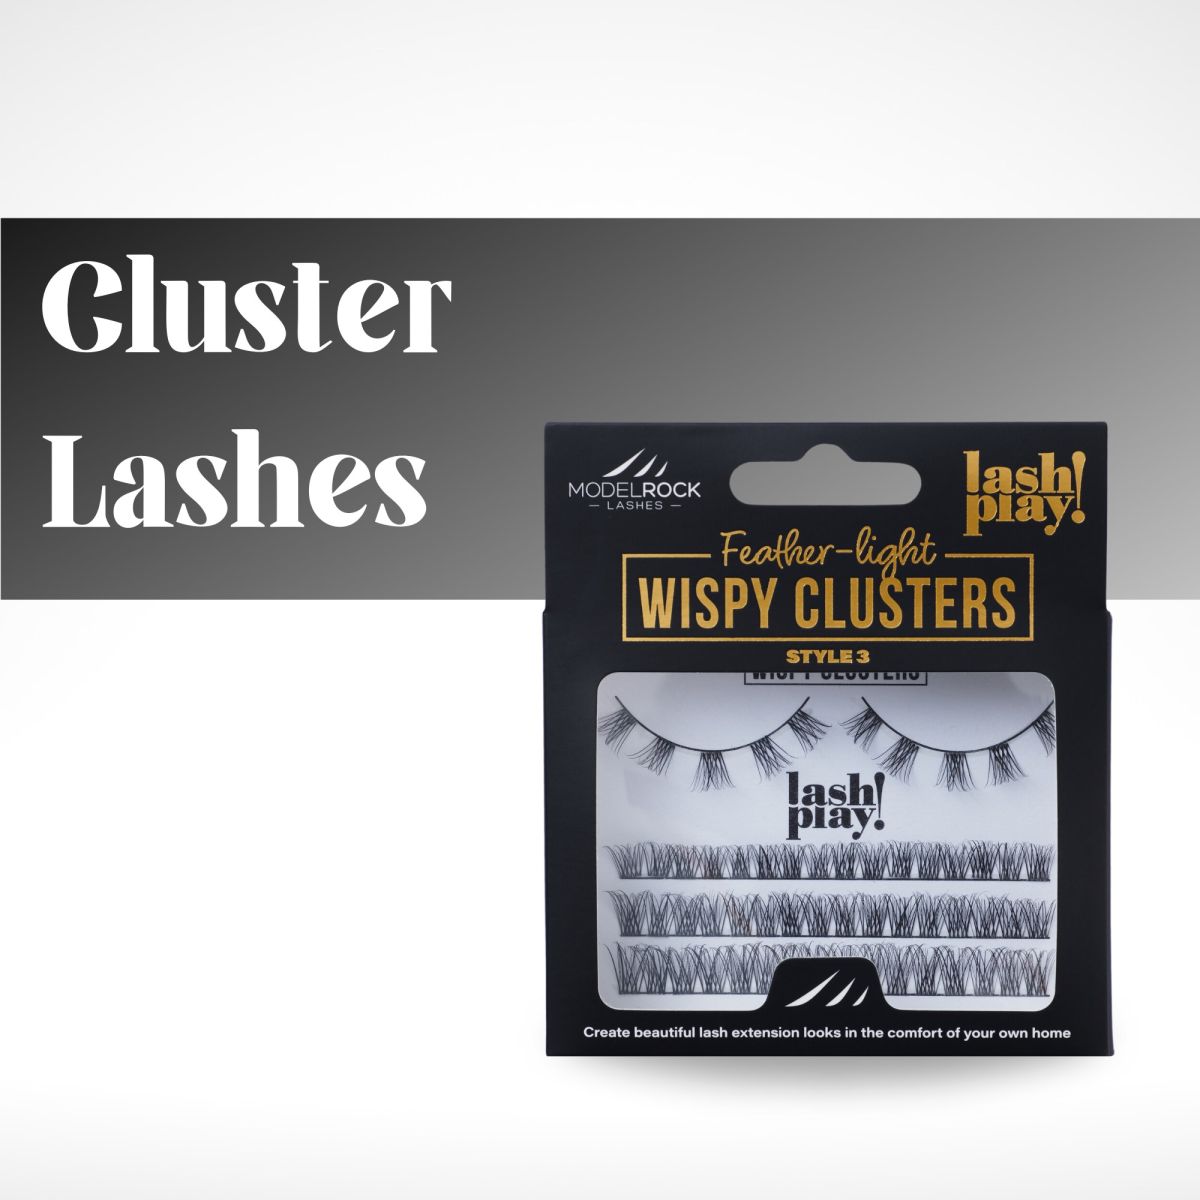 Modelrock cluster lashes